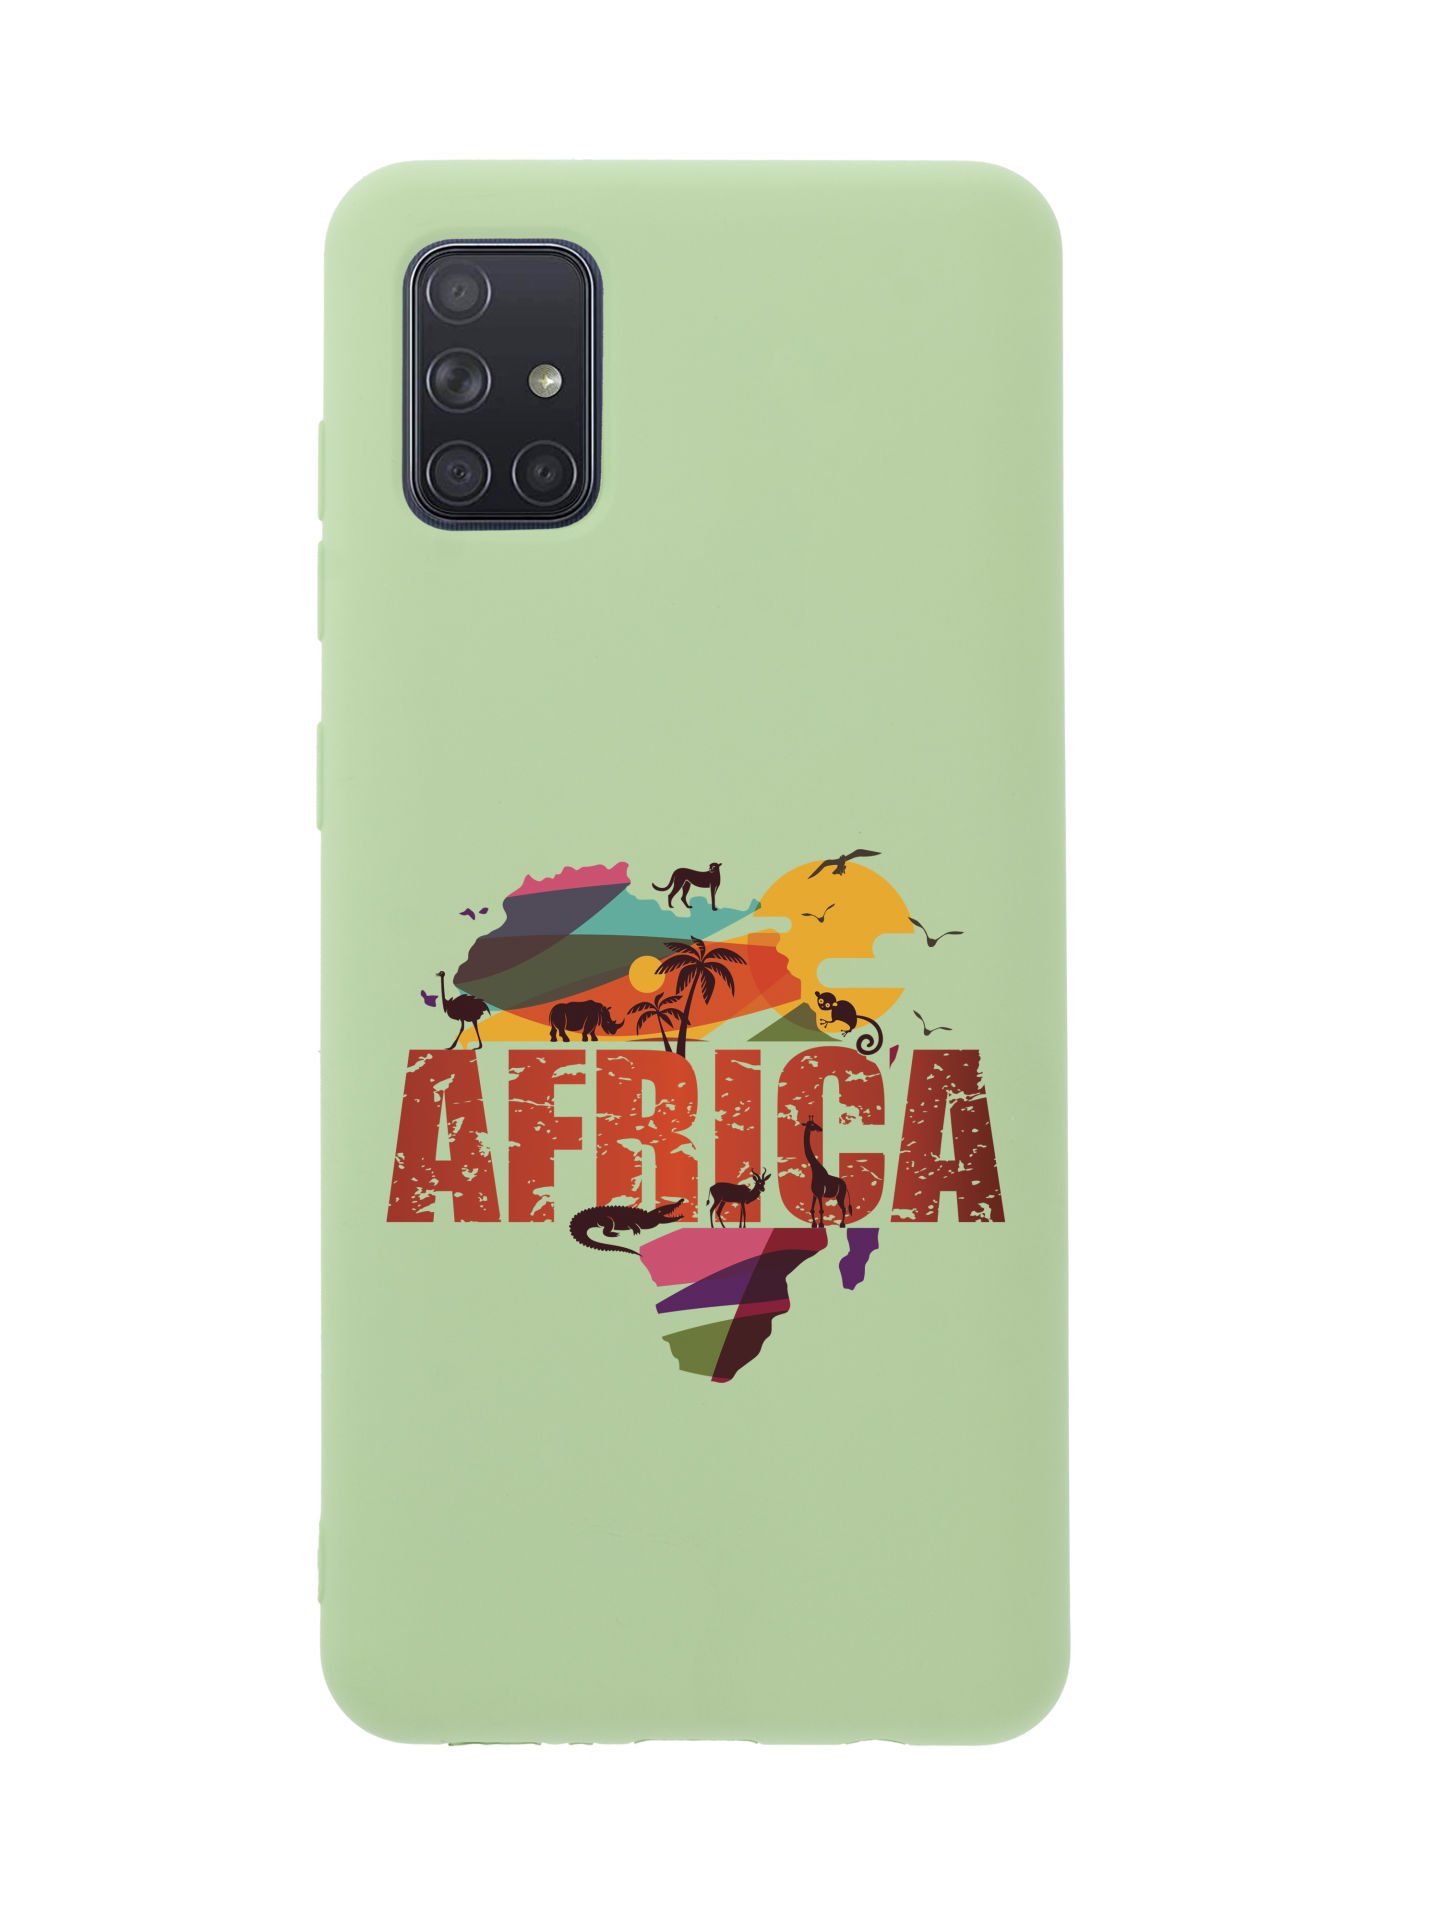 Samsung A71 Africa Premium Silikonlu Telefon Kılıfı